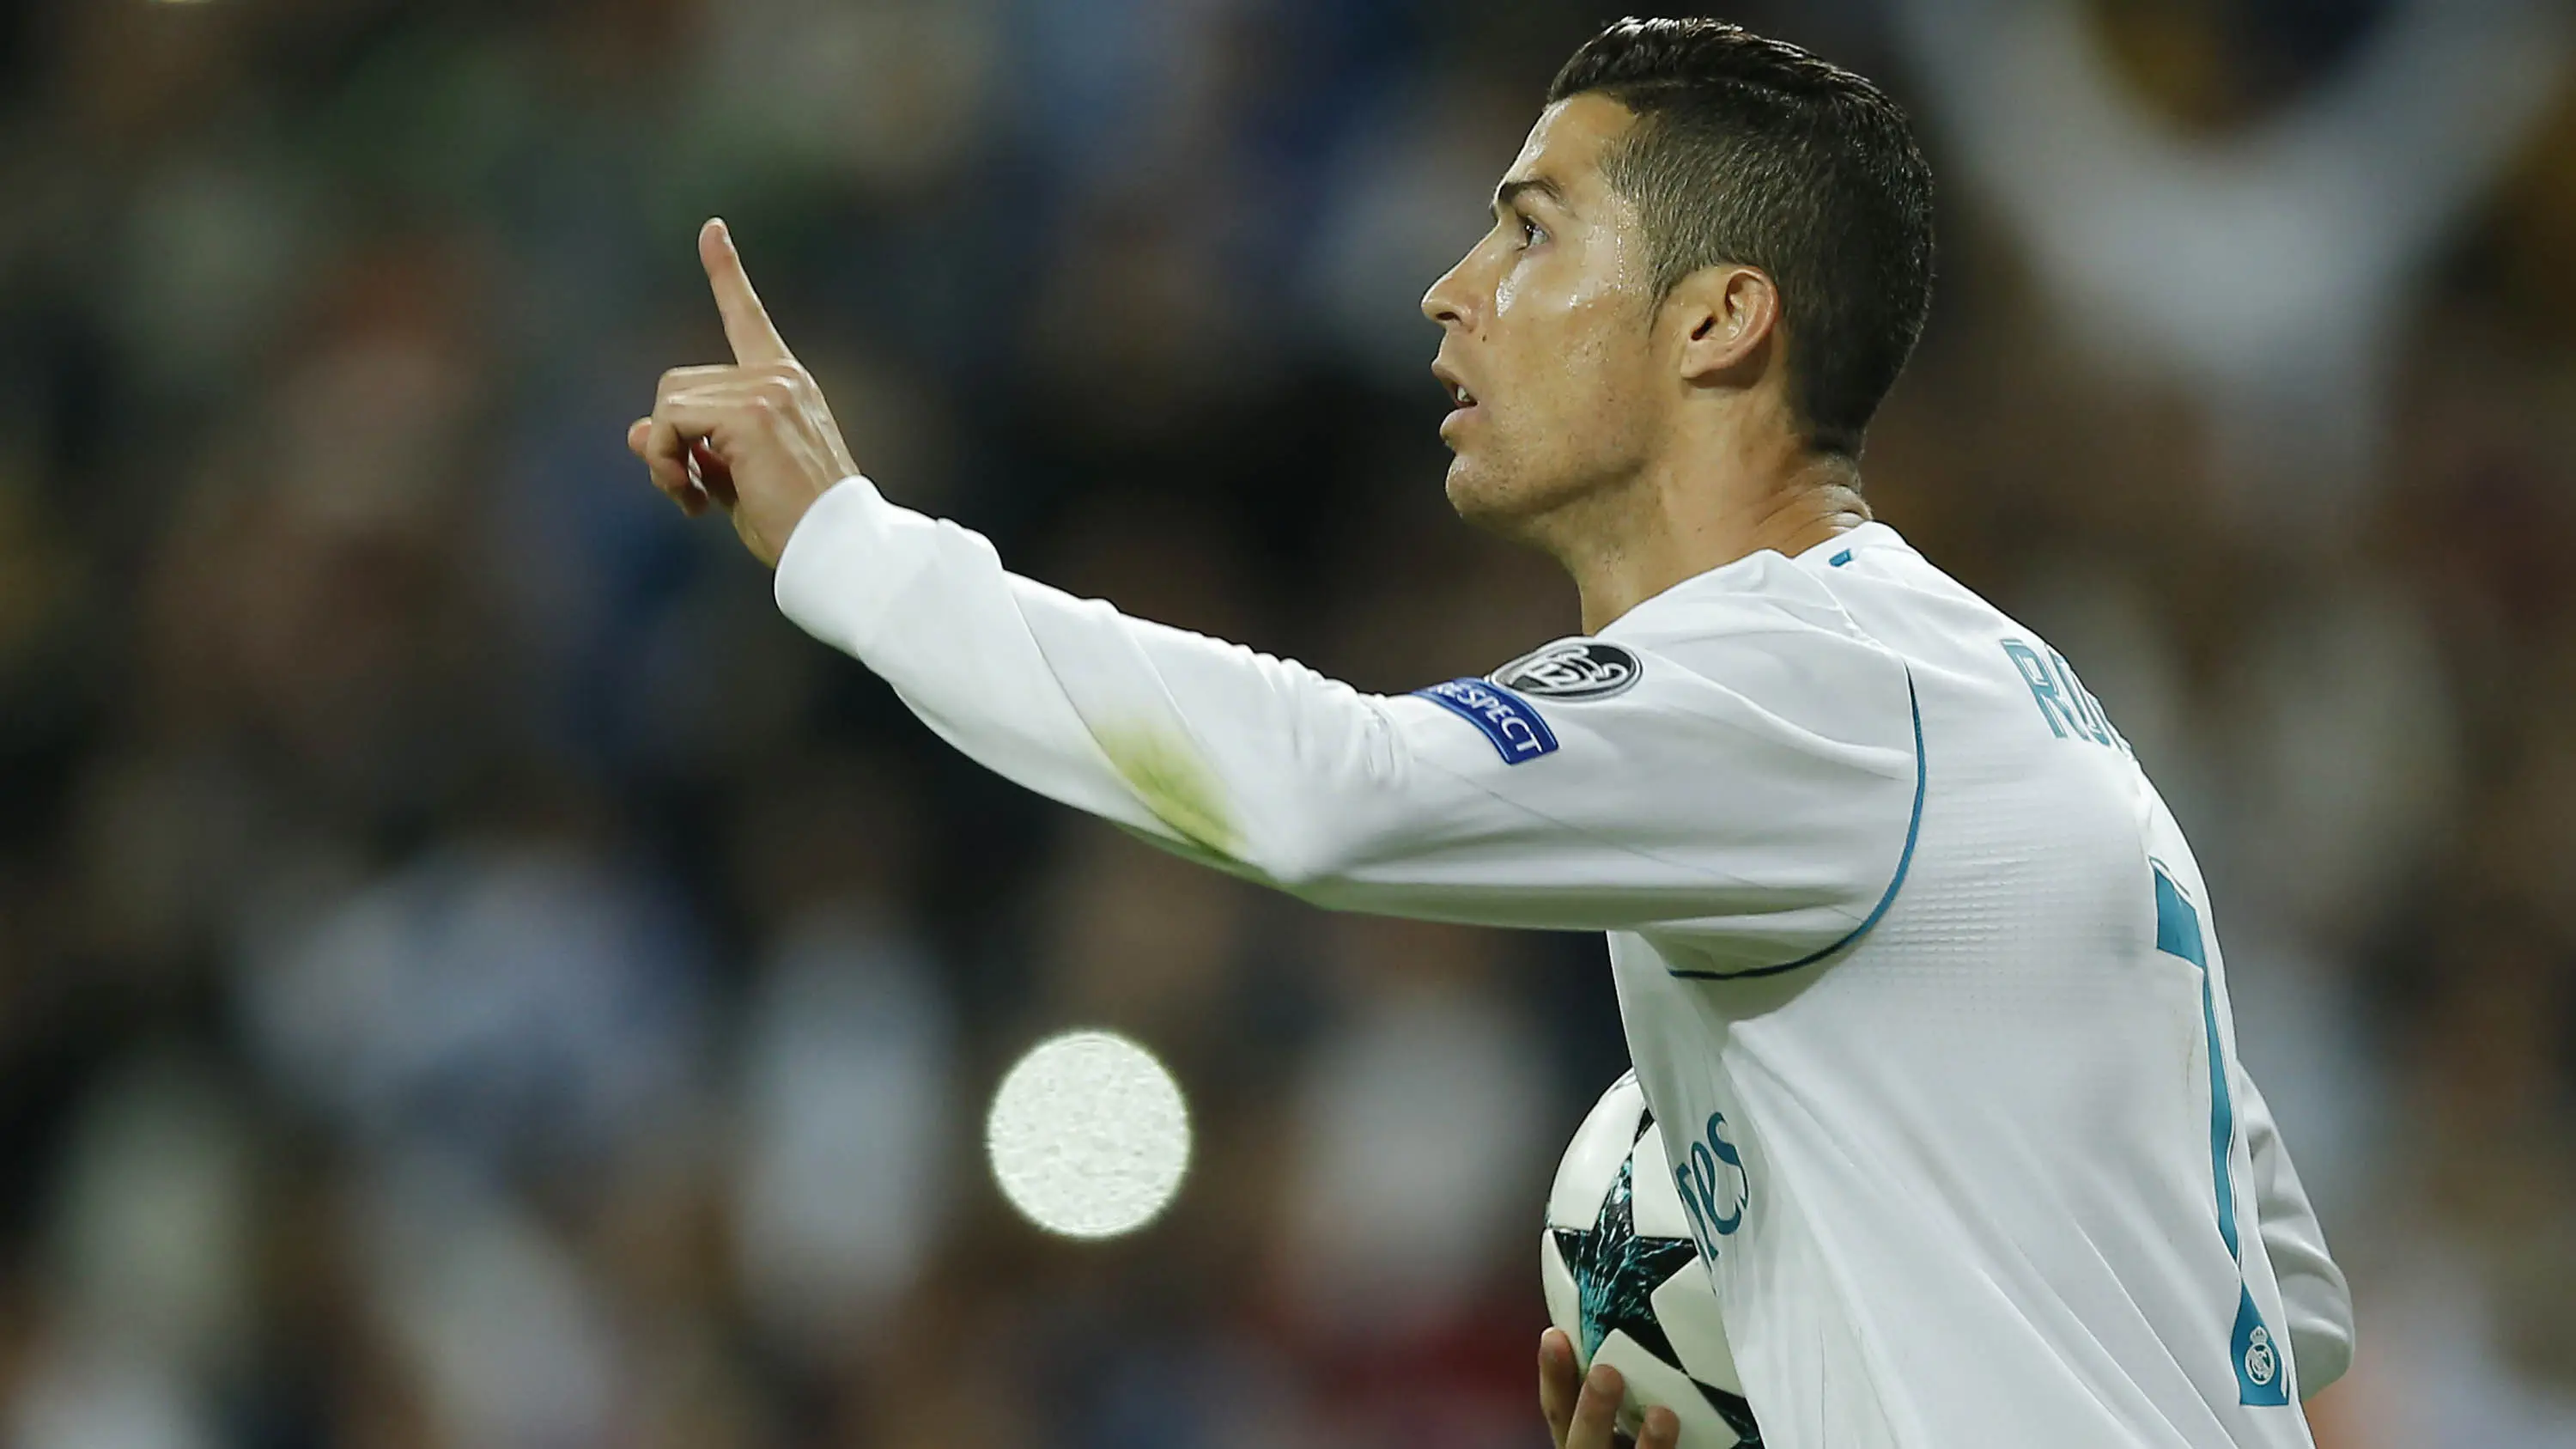 Bintang Real Madrid, Cristiano Ronaldo, merayakan gol ke gawang Tottenham pada laga Liga Champions di Stadion Santiago Bernabeu, Madrid, Selasa (17/10/2017). Kedua klub bermain imbang 1-1. (AP/Paul White)